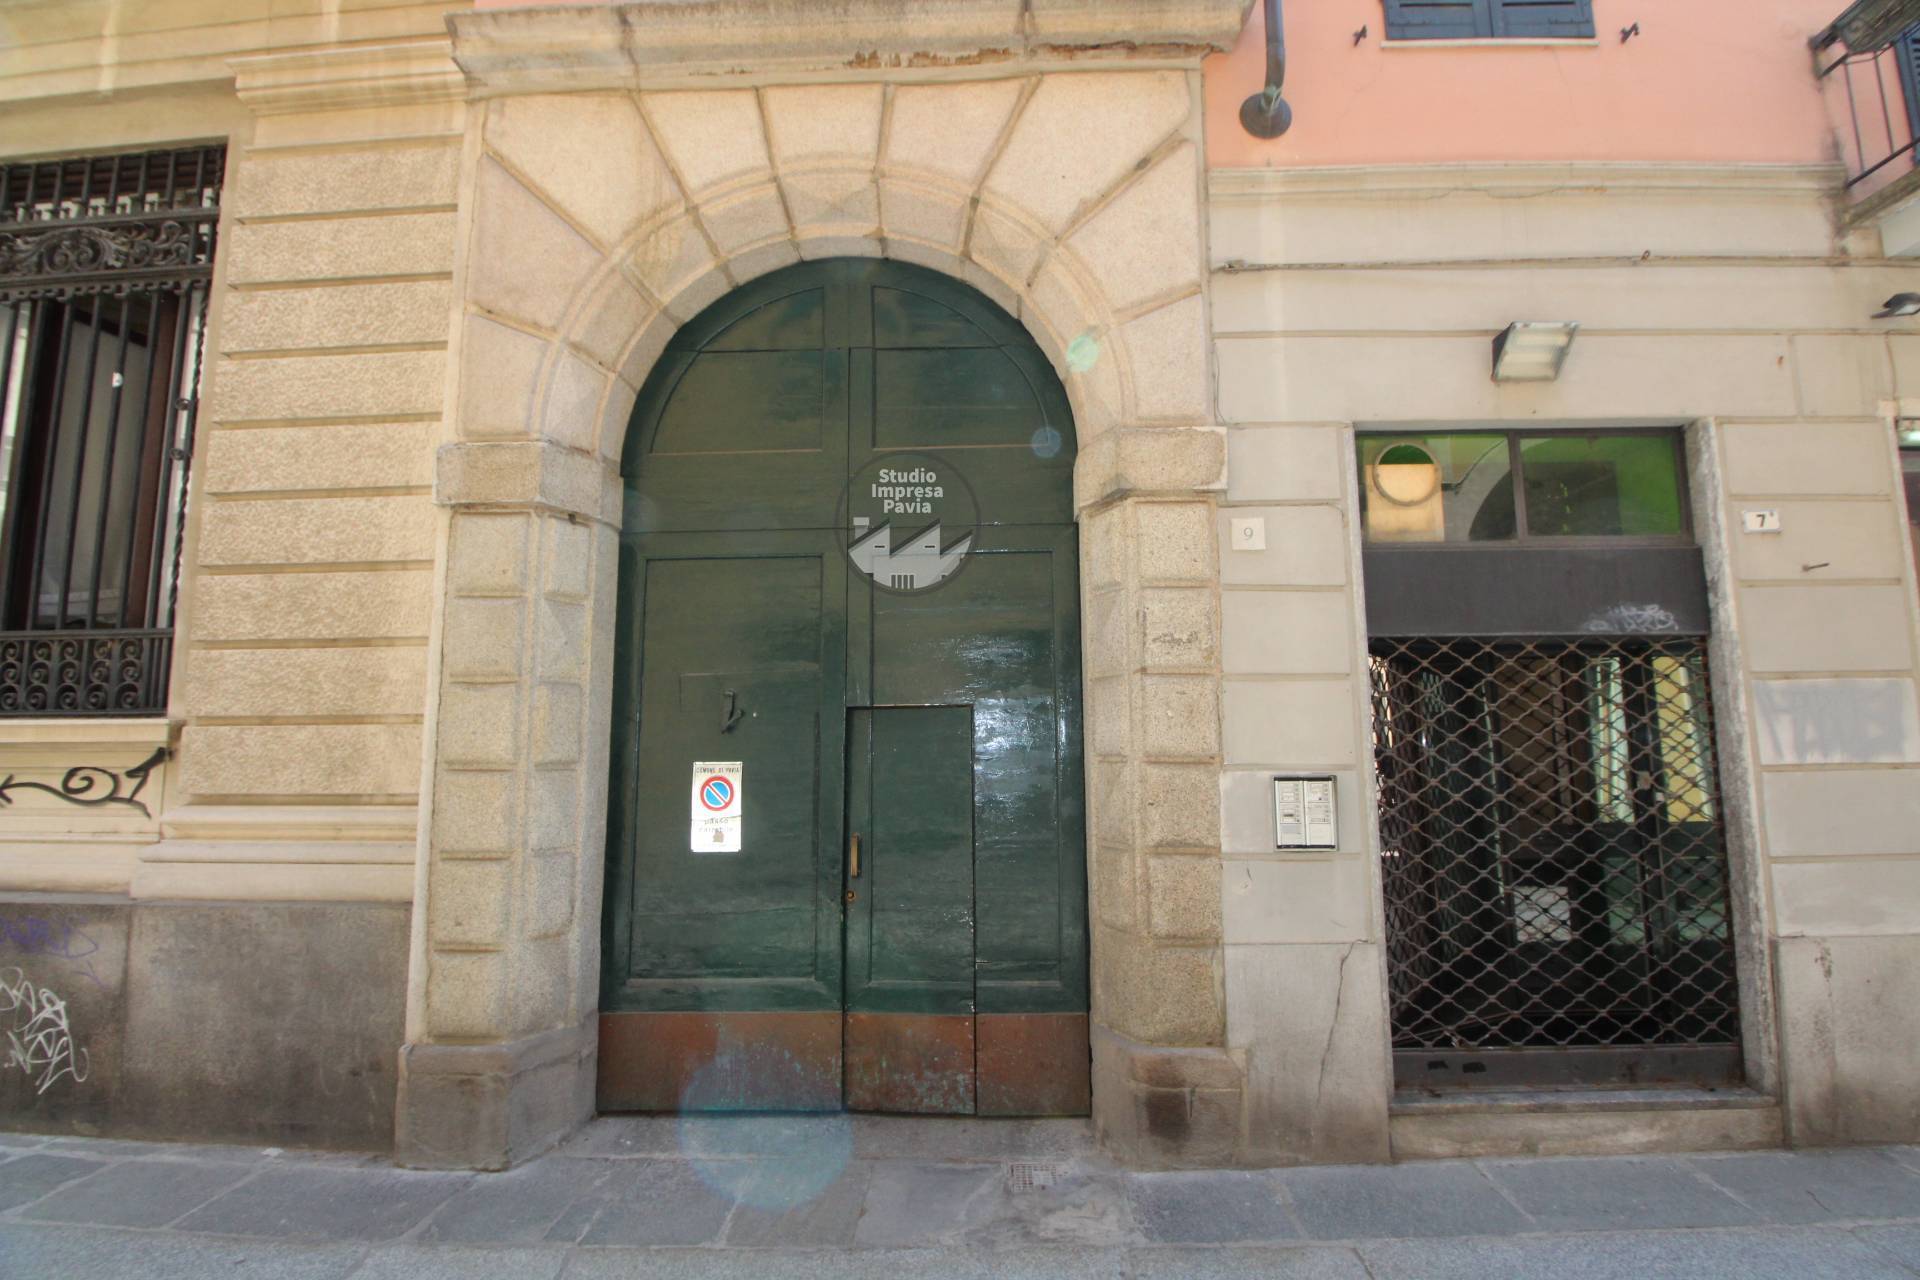 Ufficio / Studio in affitto a Pavia, 9999 locali, zona Località: CentroStorico, prezzo € 1.000 | PortaleAgenzieImmobiliari.it